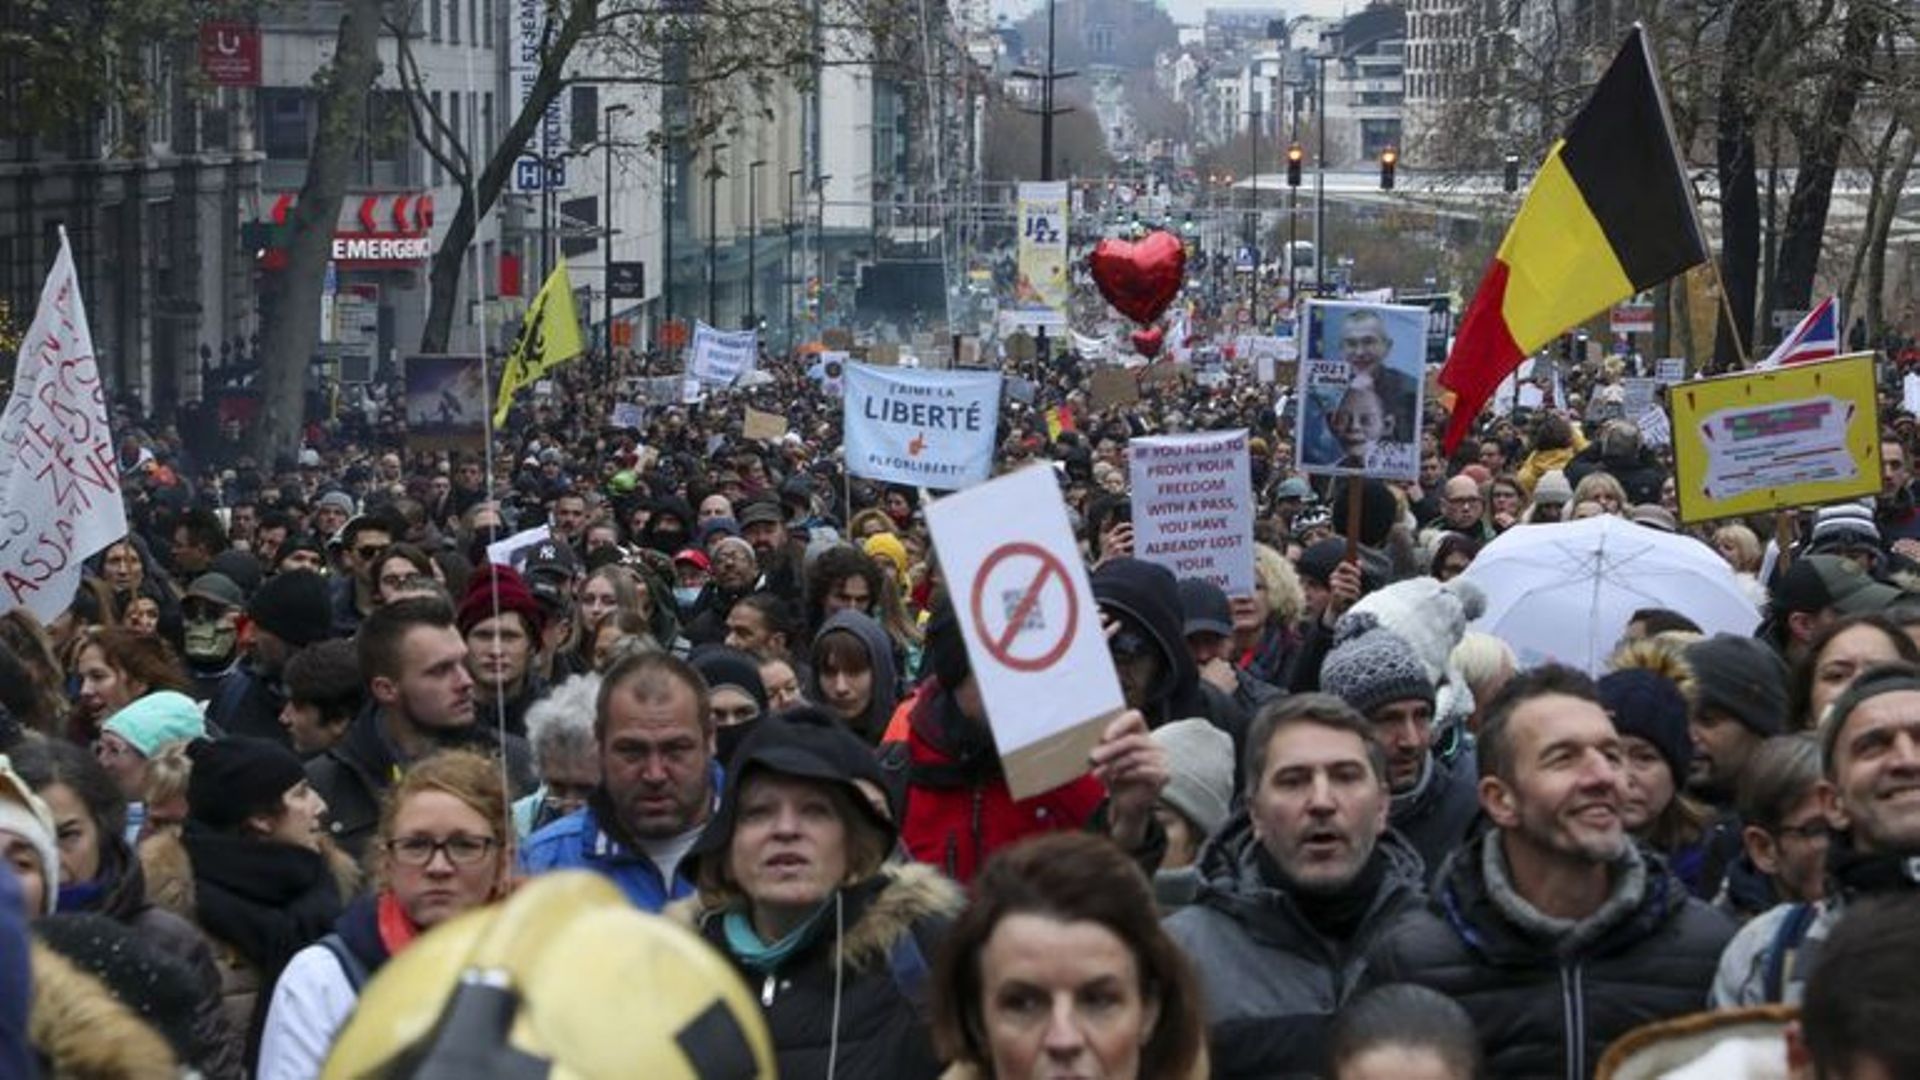 Ce 5 décembre, des milliers de manifestants ont marché dans les rues de Bruxelles contre les mesures prises par le gouvernement dans le cadre de la crise sanitaire. 